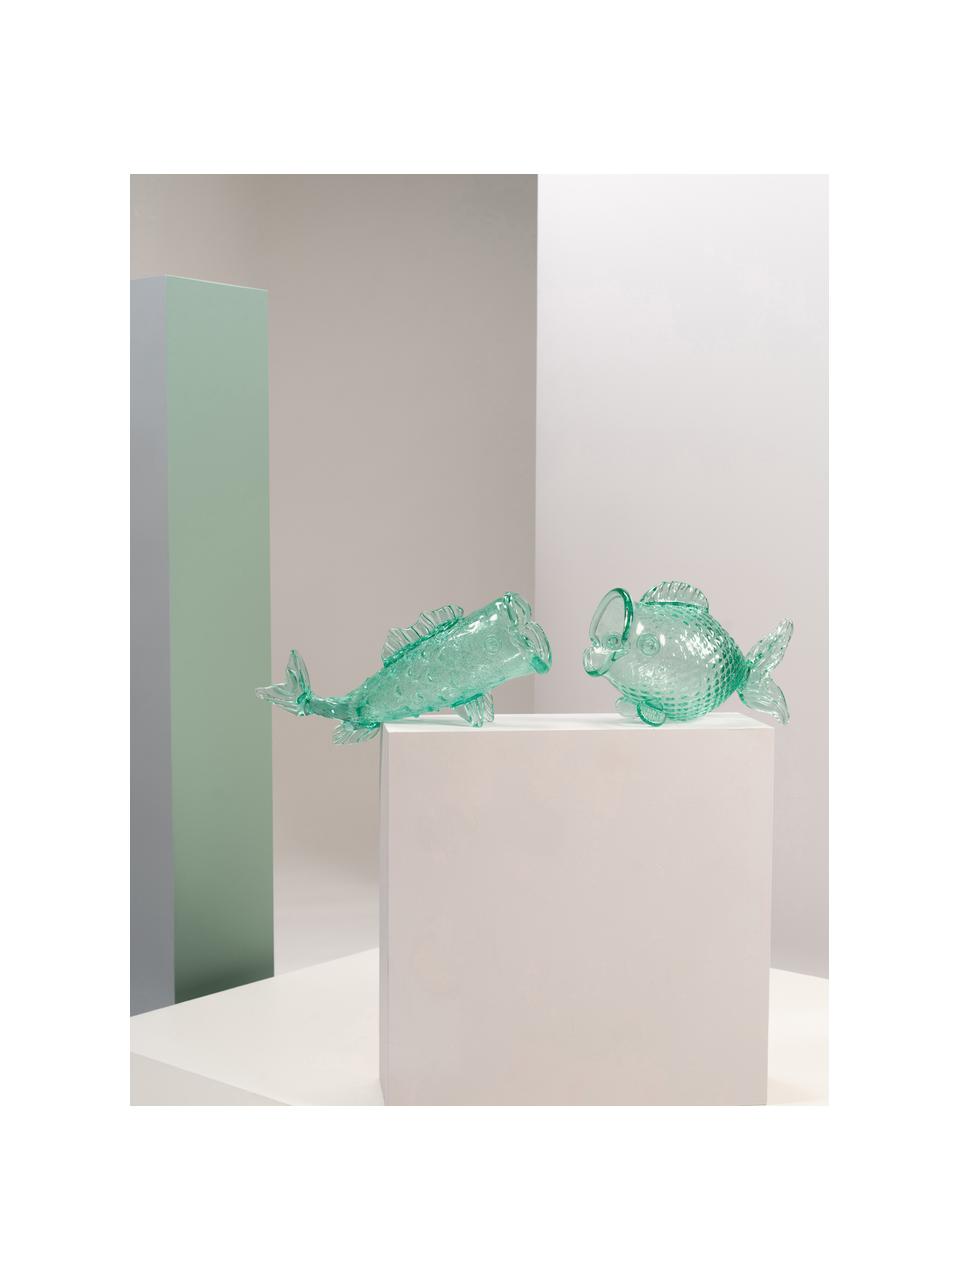 Bote de almacenamiento soplado Fish, Vidrio soplado artesanalmente, Verde menta transparente, An 48 x Al 20 cm